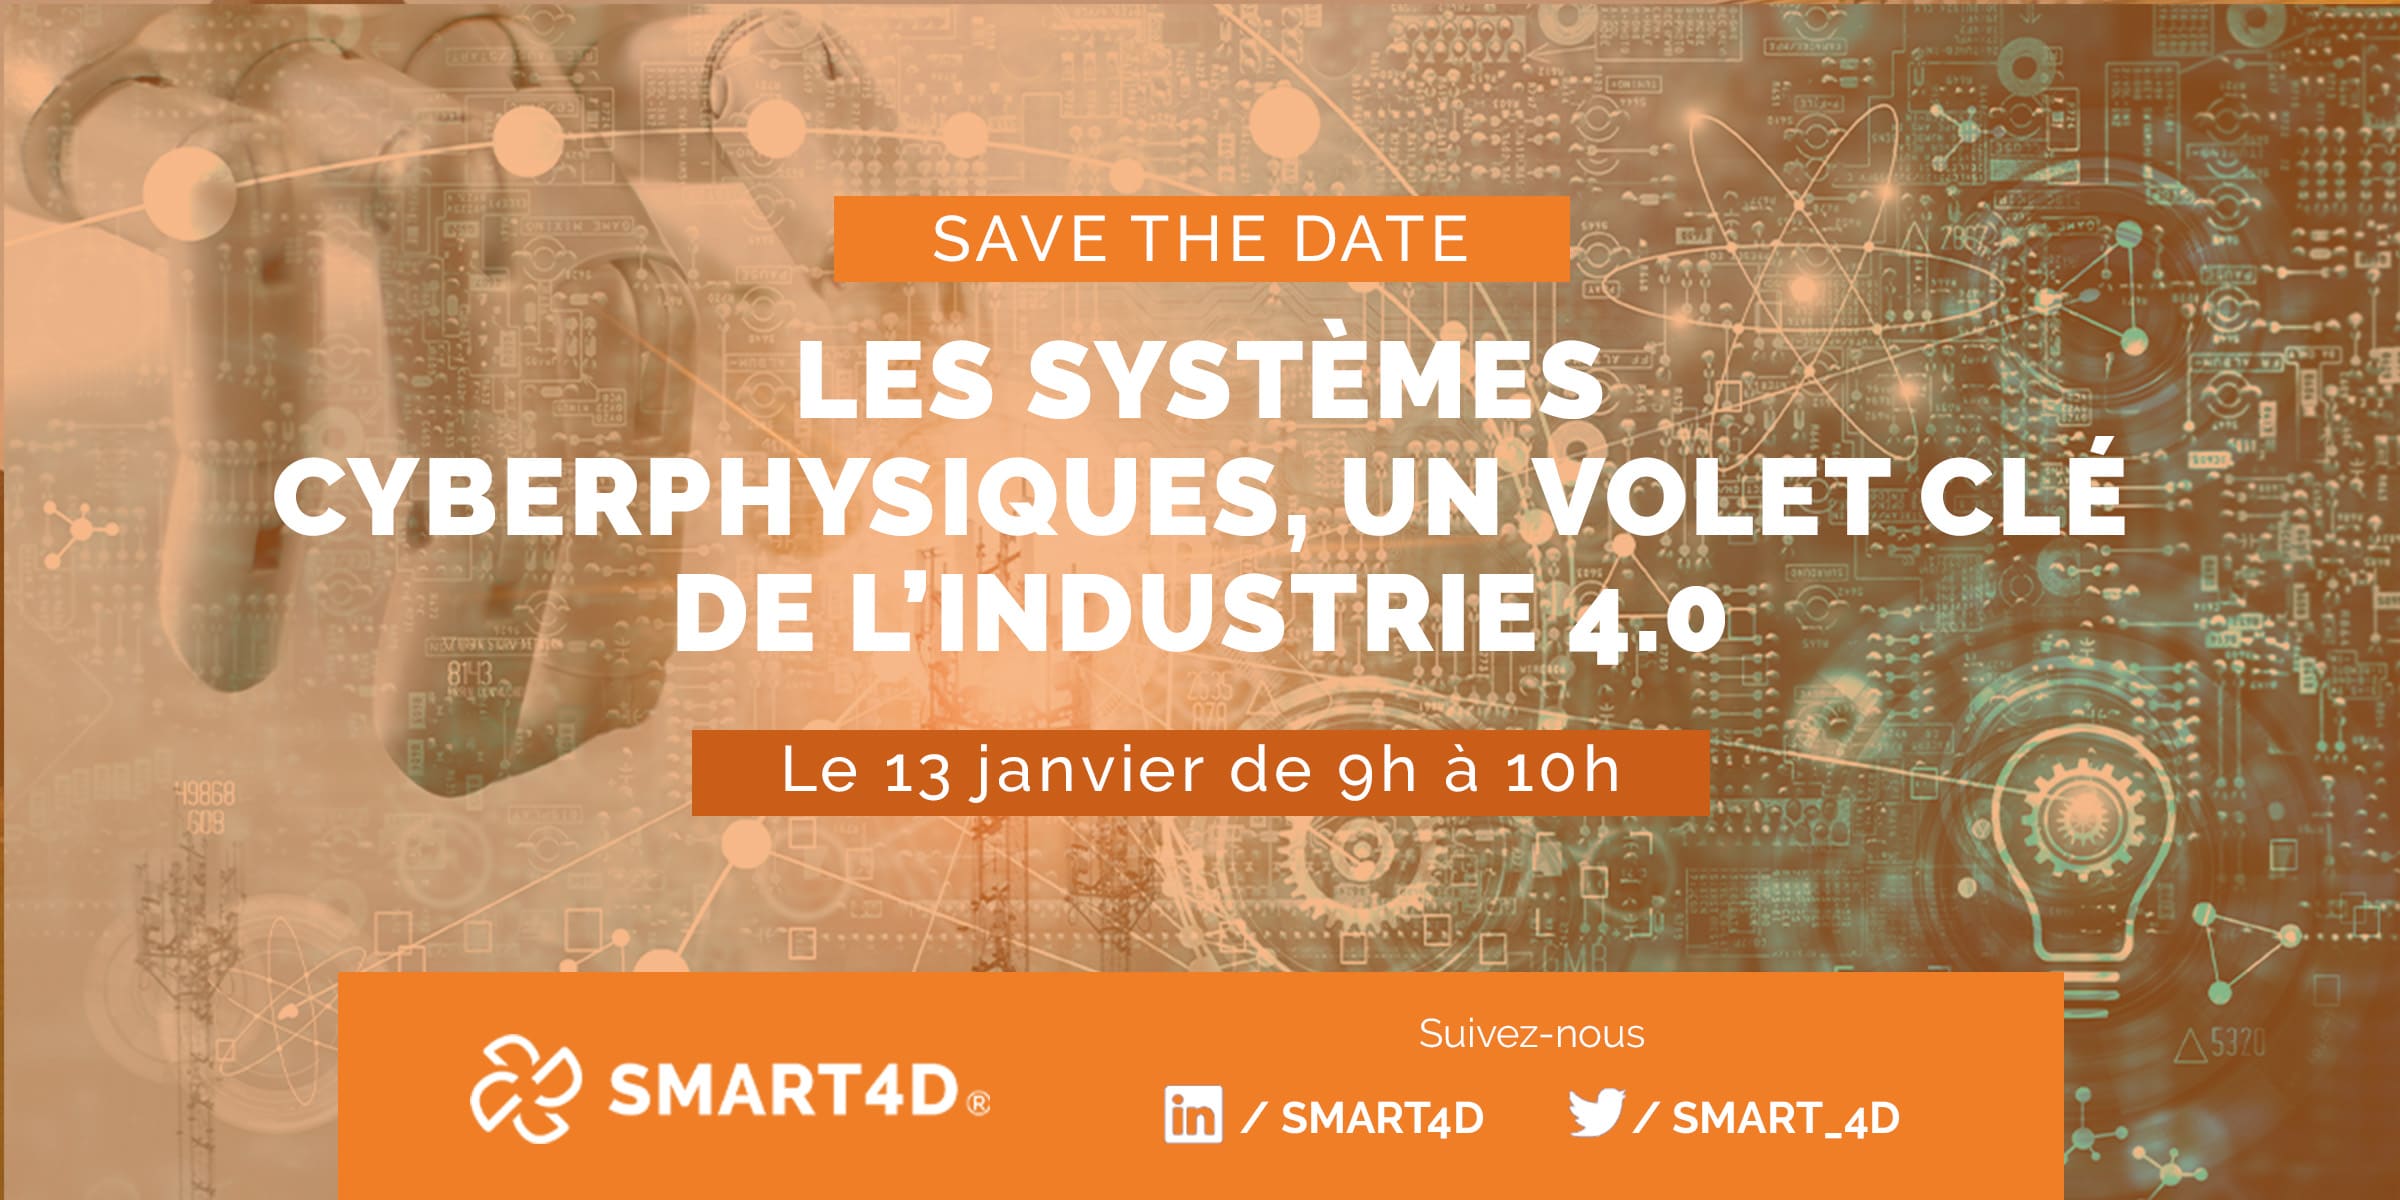 Save the date : Les systèmes cyberphysiques